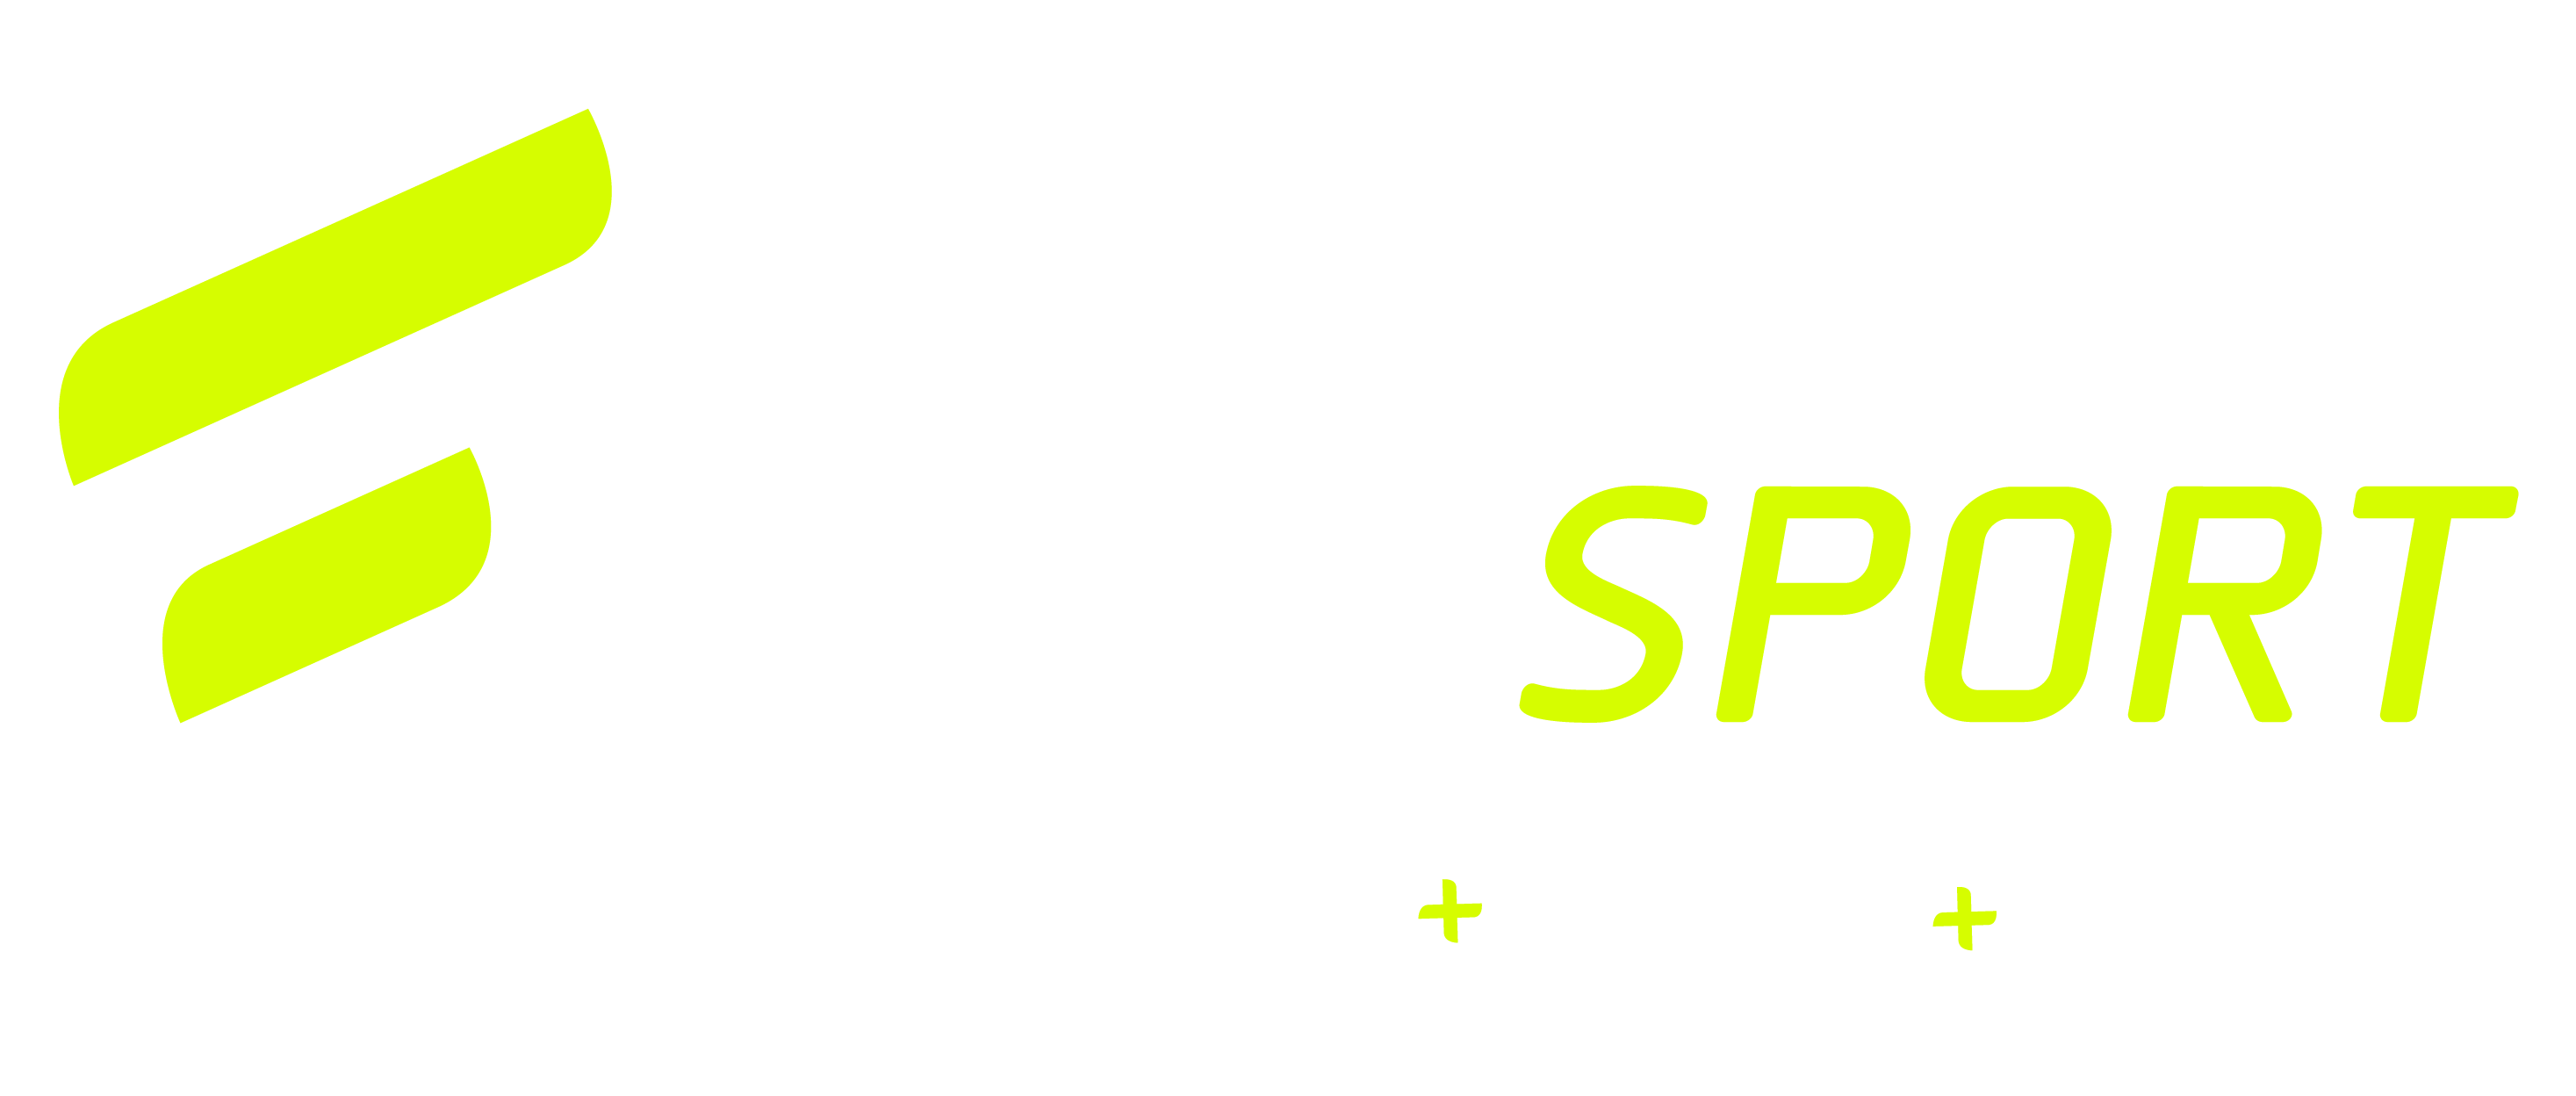 Faby Sport